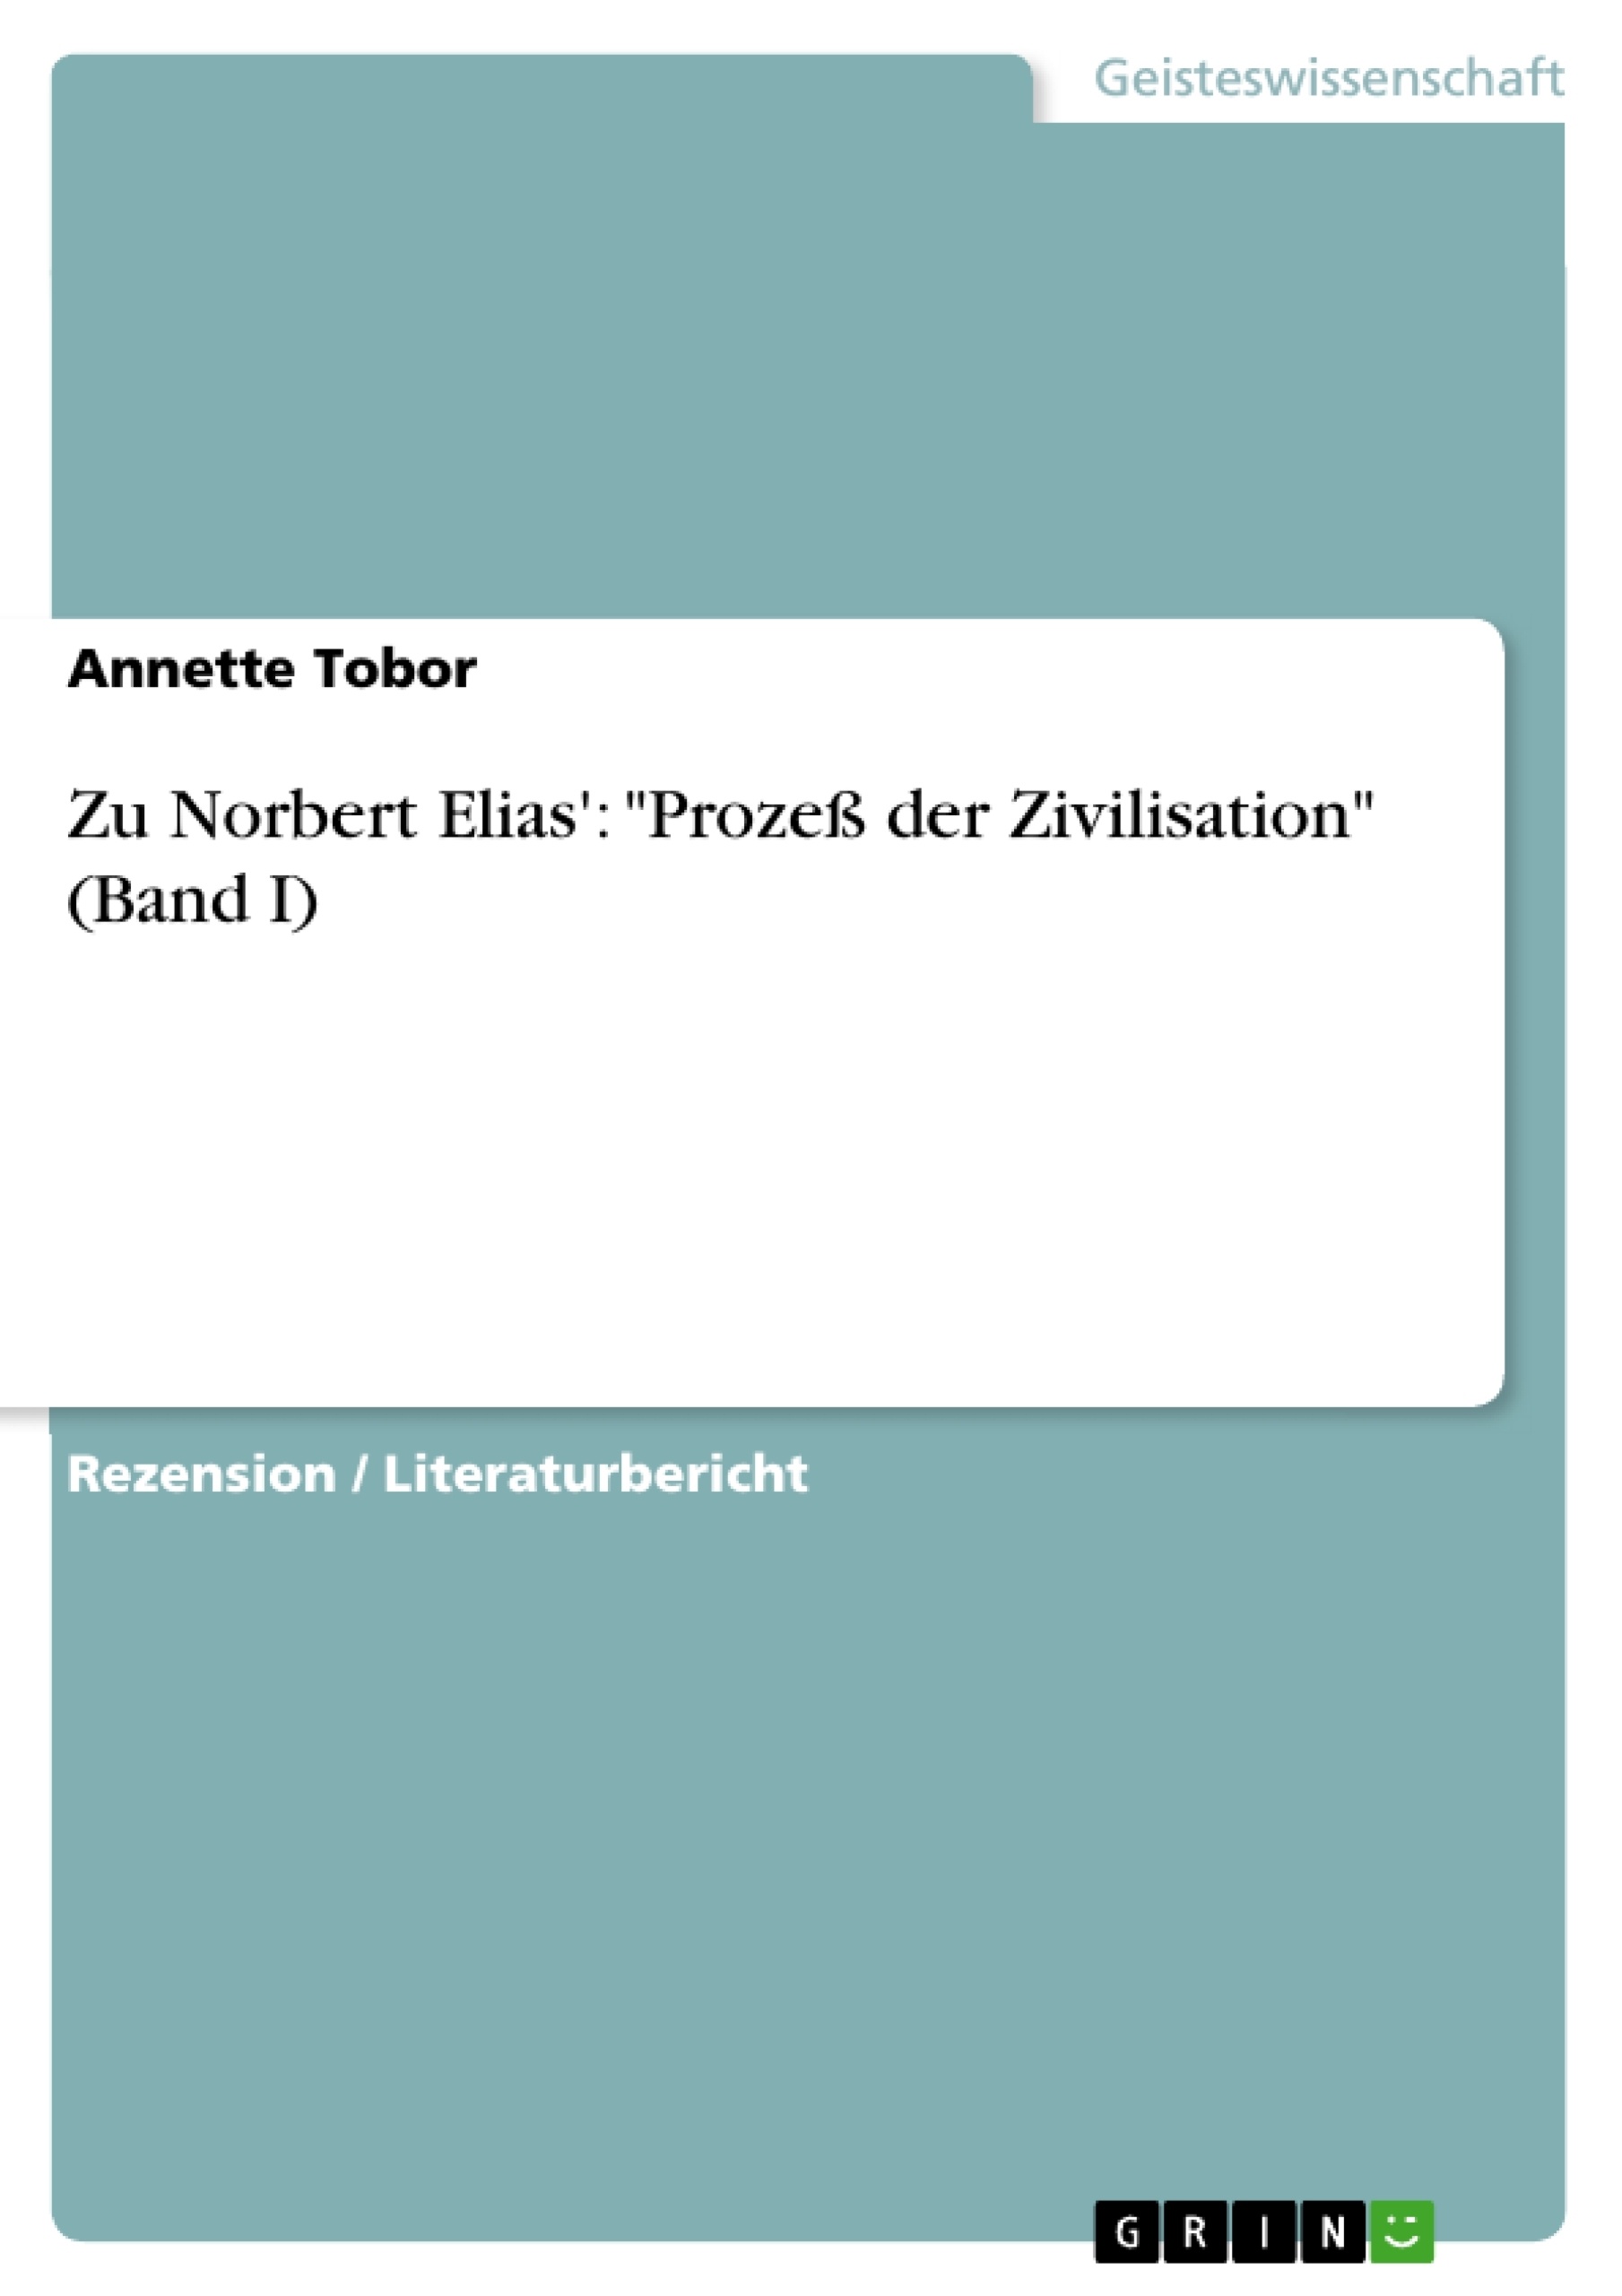 Title: Zu Norbert Elias': "Prozeß der Zivilisation" (Band I)